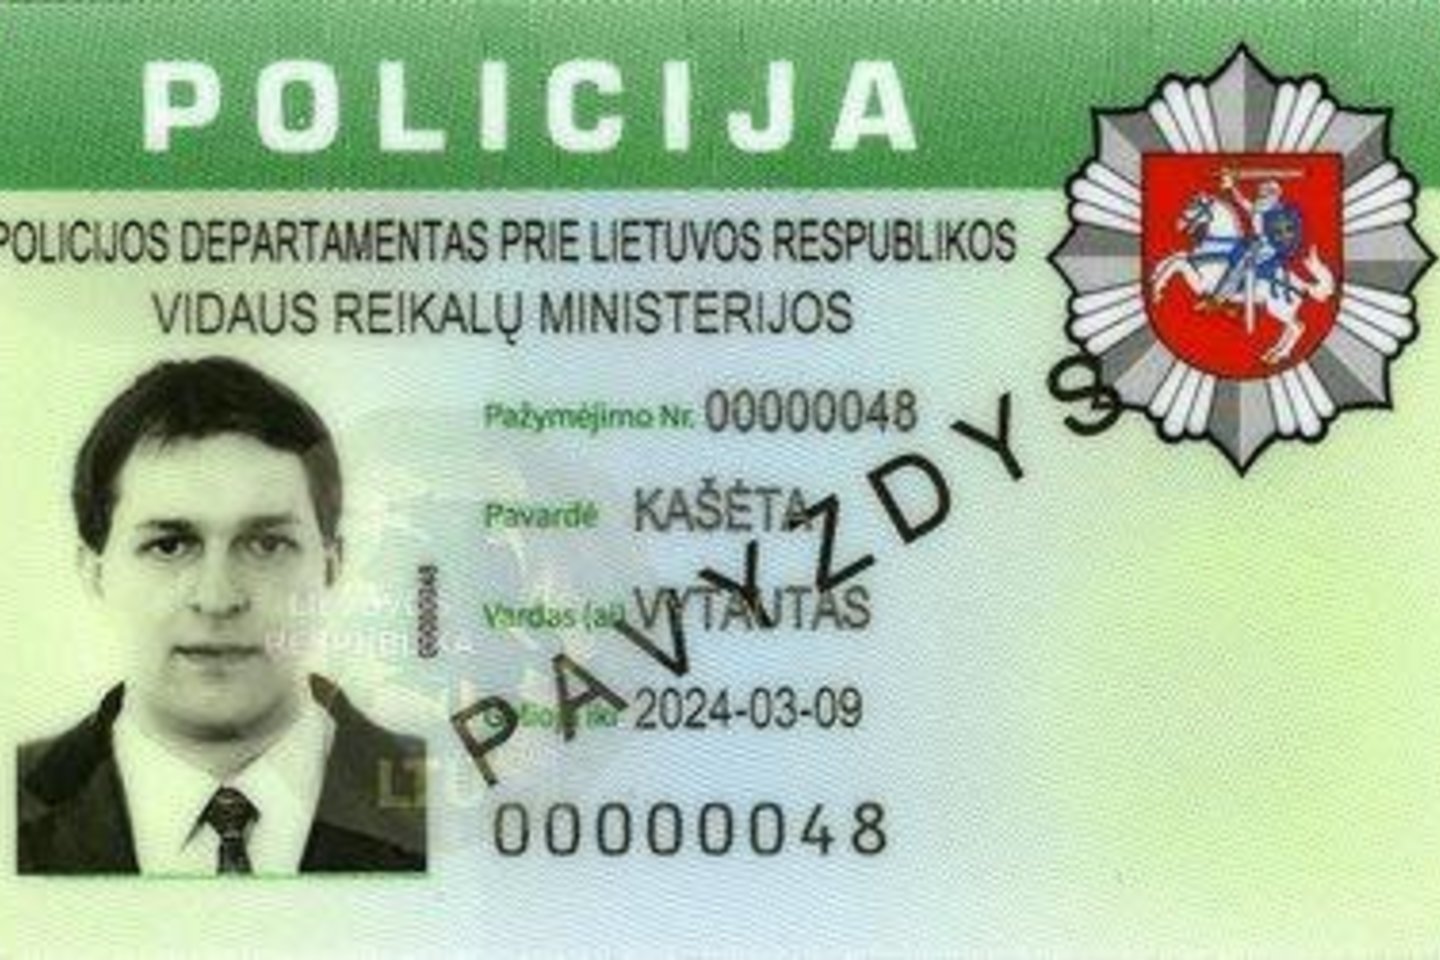 Policijos pareigūnams bus išduodami naujo pavyzdžio tarnybiniai pažymėjimai.<br>Lietuvos policijos nuotr.